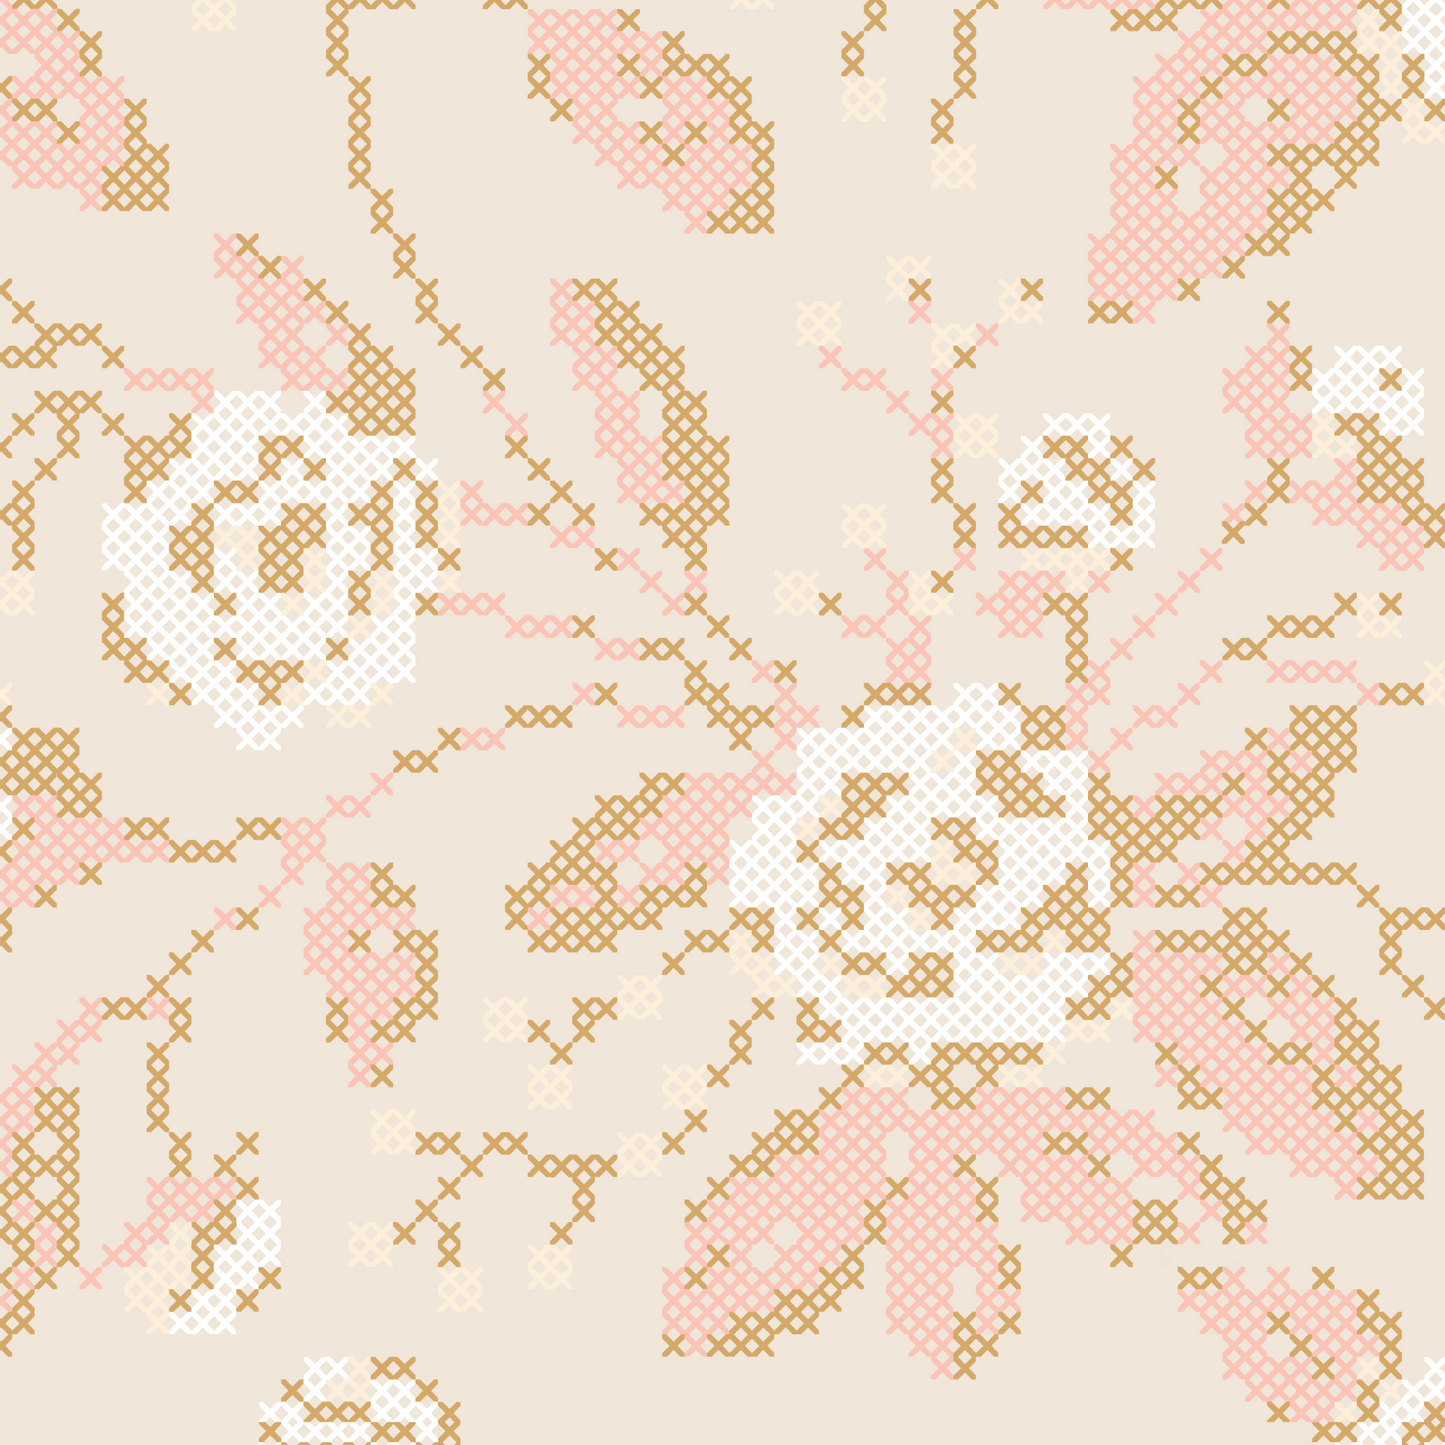 Cross Stitch Flowers Wallpaper - Tan